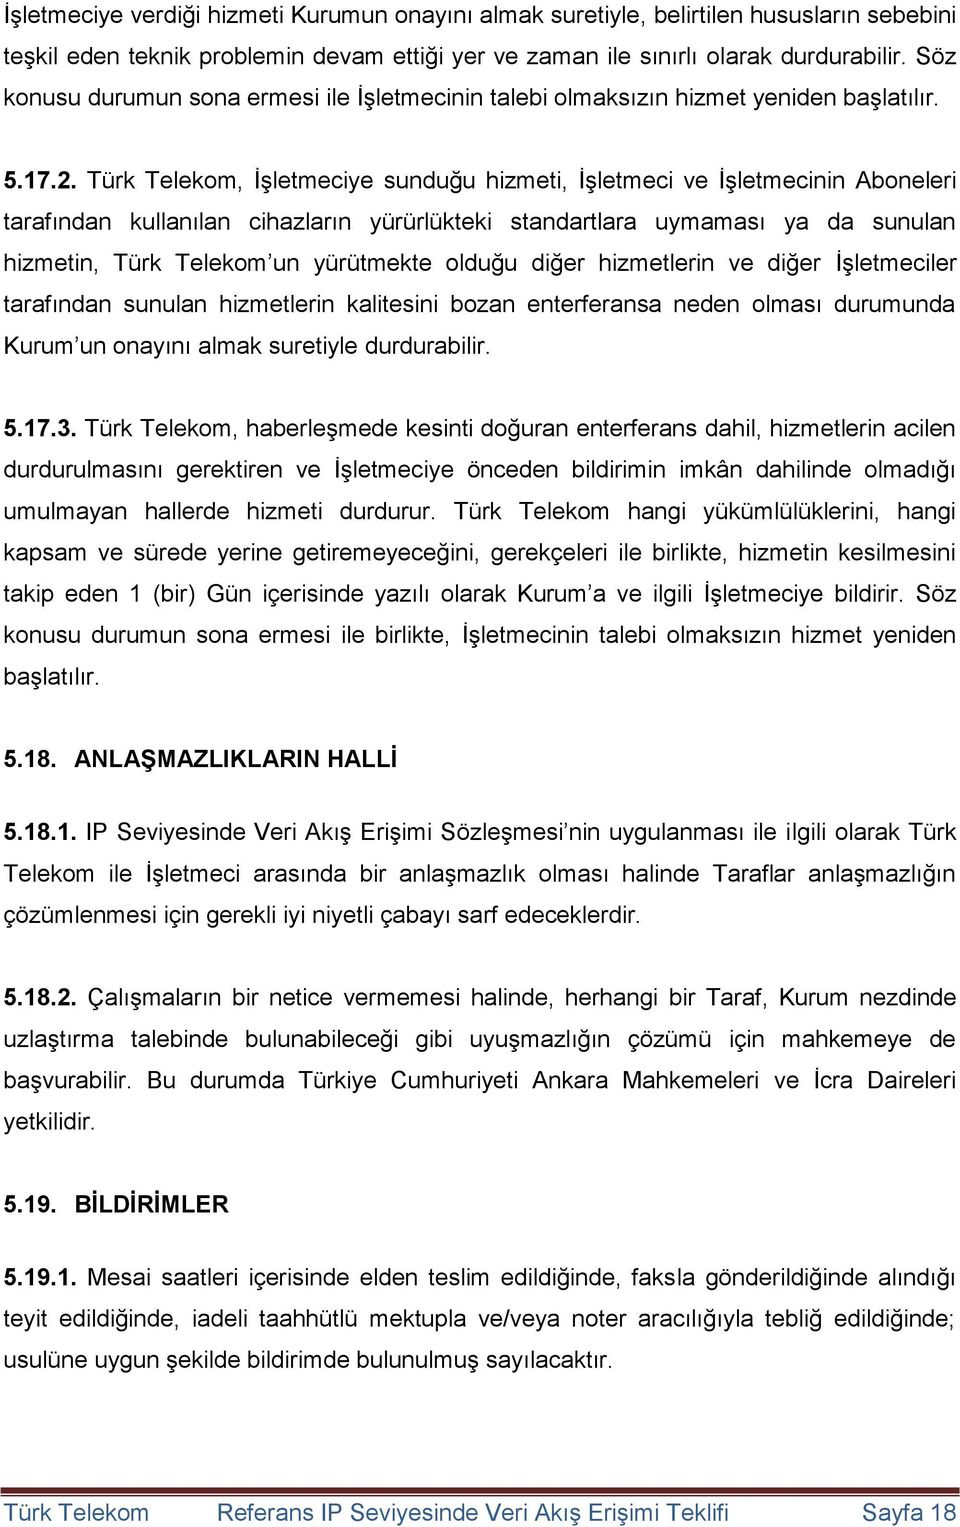 Türk Telekom, İşletmeciye sunduğu hizmeti, İşletmeci ve İşletmecinin Aboneleri tarafından kullanılan cihazların yürürlükteki standartlara uymaması ya da sunulan hizmetin, Türk Telekom un yürütmekte